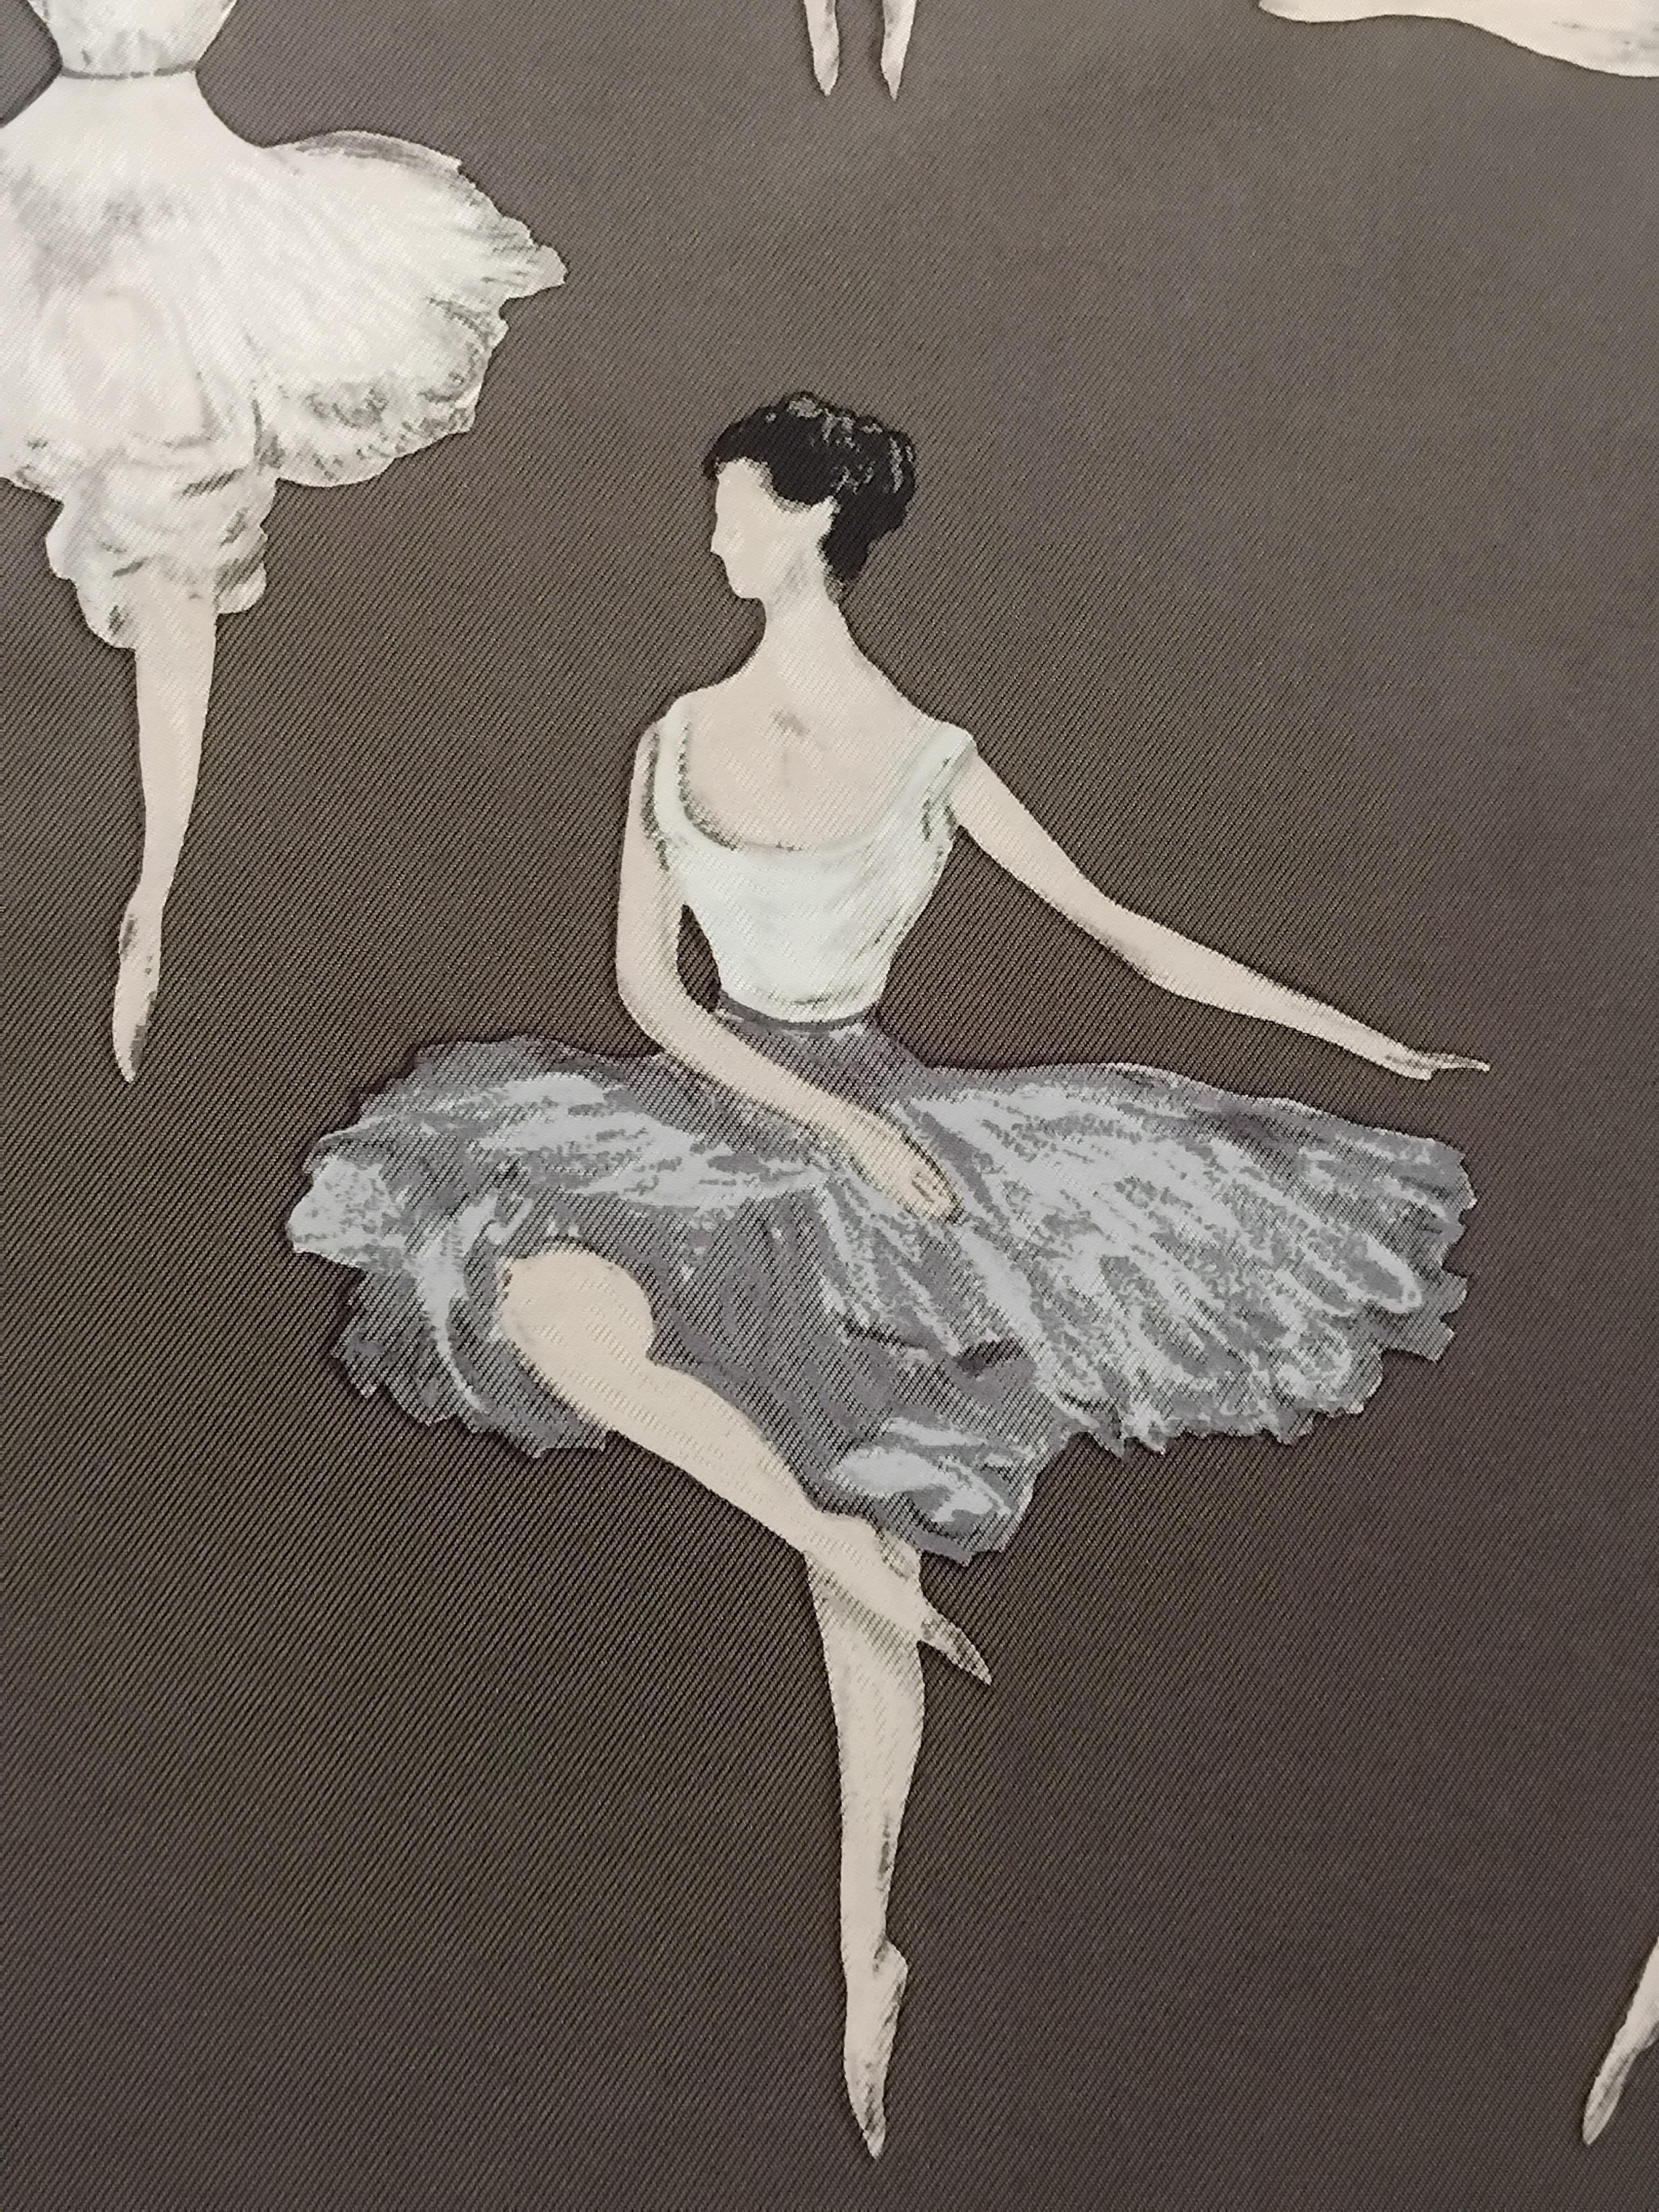 Süßer und eleganter authentischer Hermès-Schal

Drucken: La Danse

Entworfen von Jean Louis Clerc im Jahr 1961. Dies ist eine Neuauflage

Absolut schön in dieser seltenen Farbvariante 

Hergestellt in Frankreich

Hergestellt aus 100%